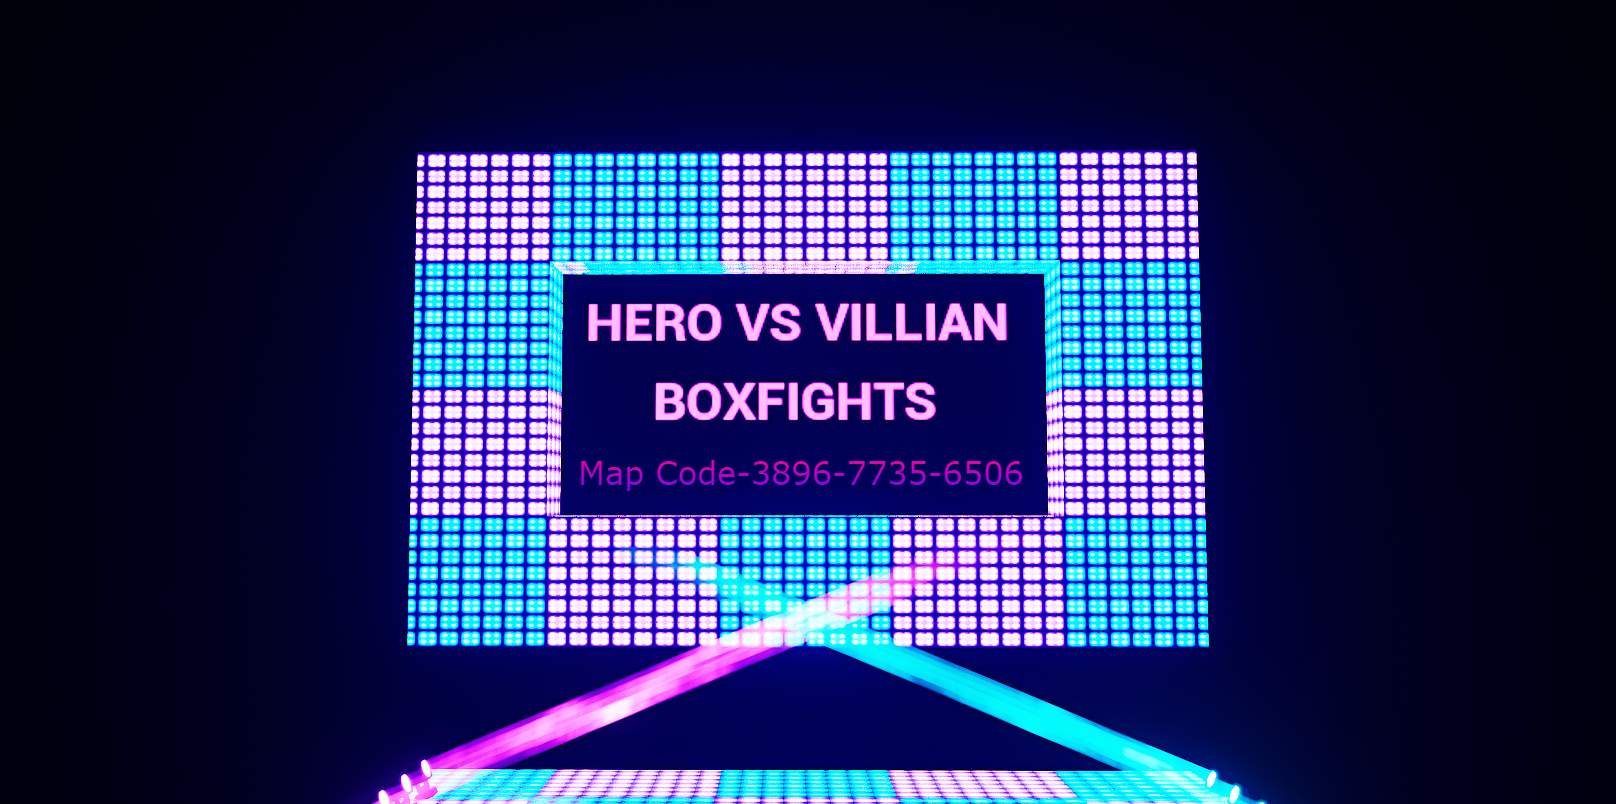 HERO V VILLAIN BOX FIGHTS